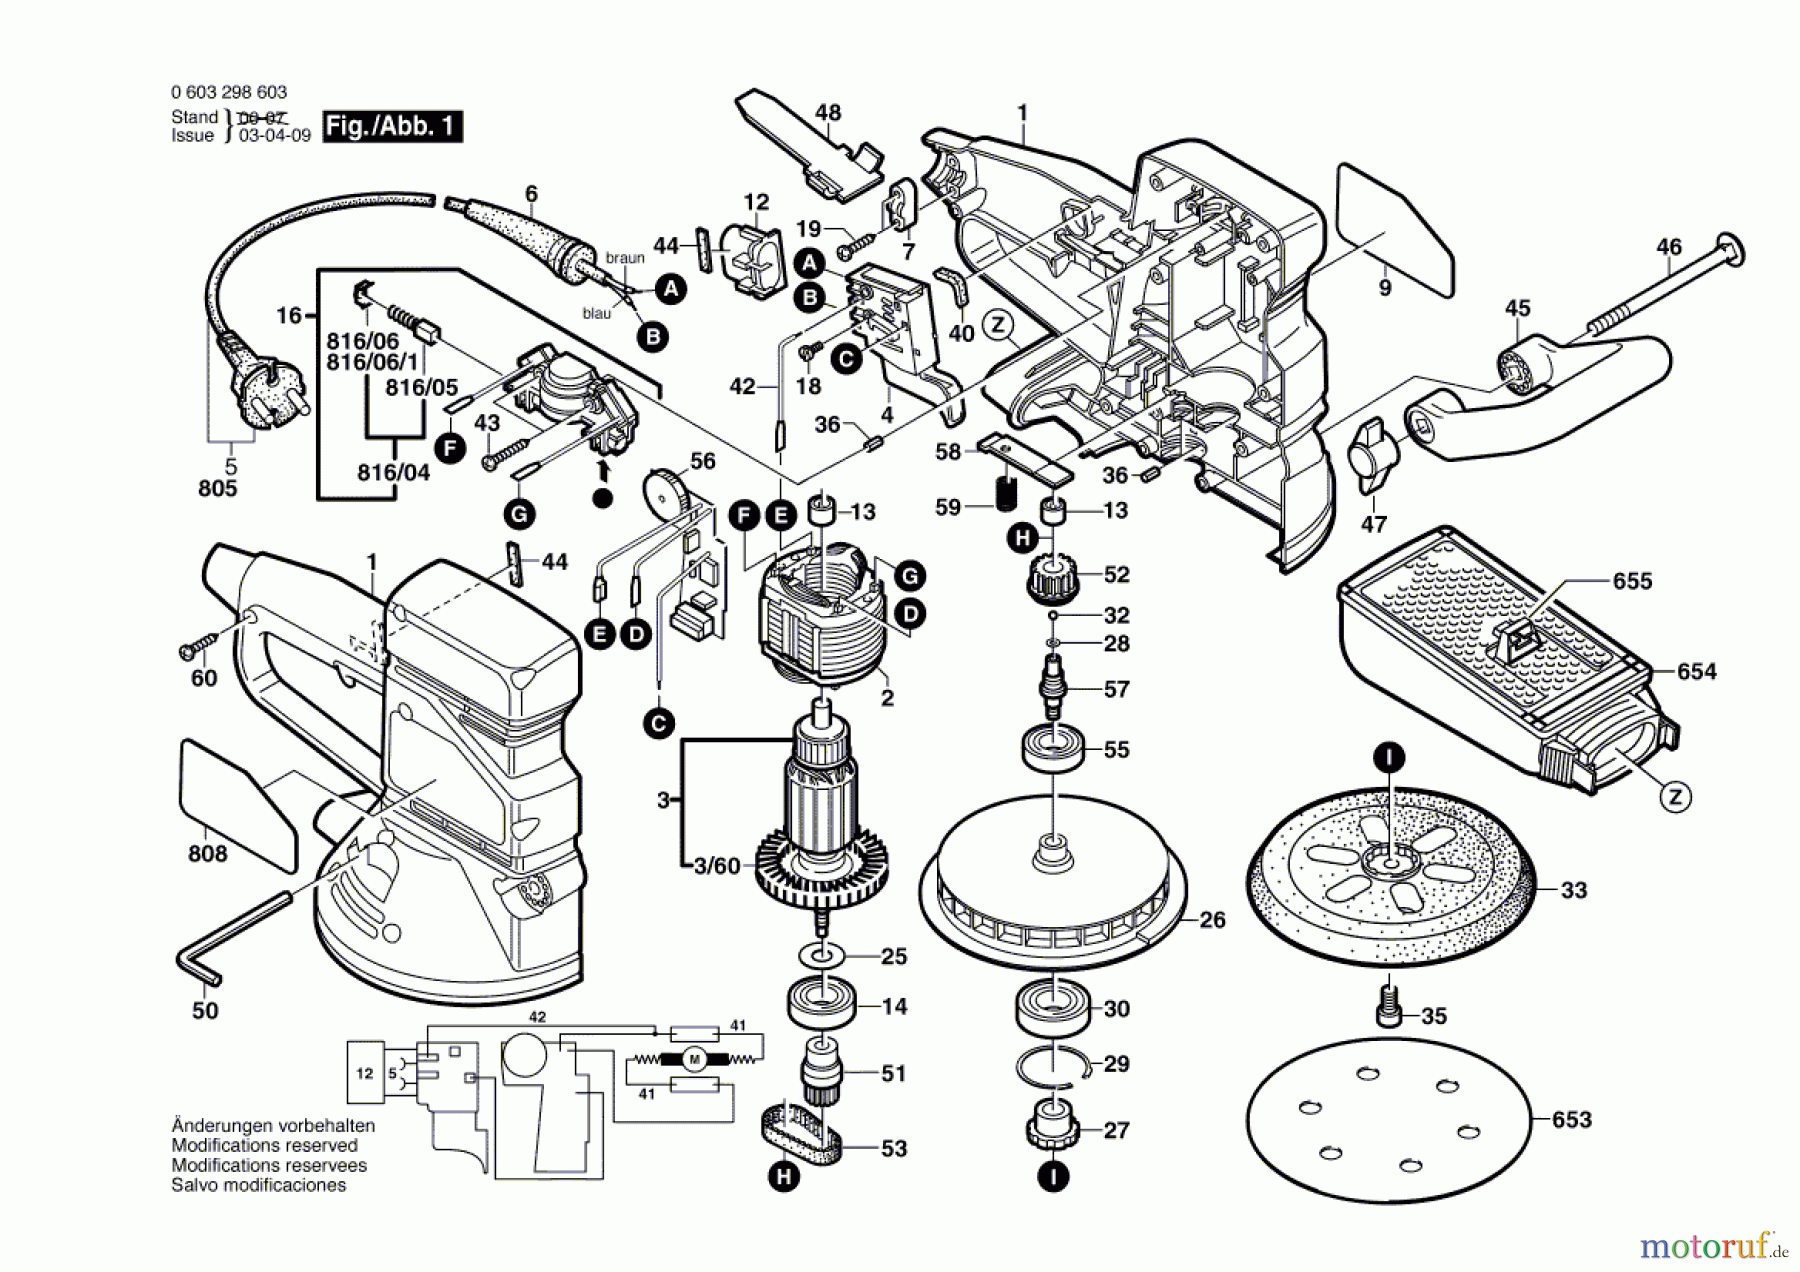  Bosch Werkzeug Exzenterschleifer PEX 420 AE Seite 1